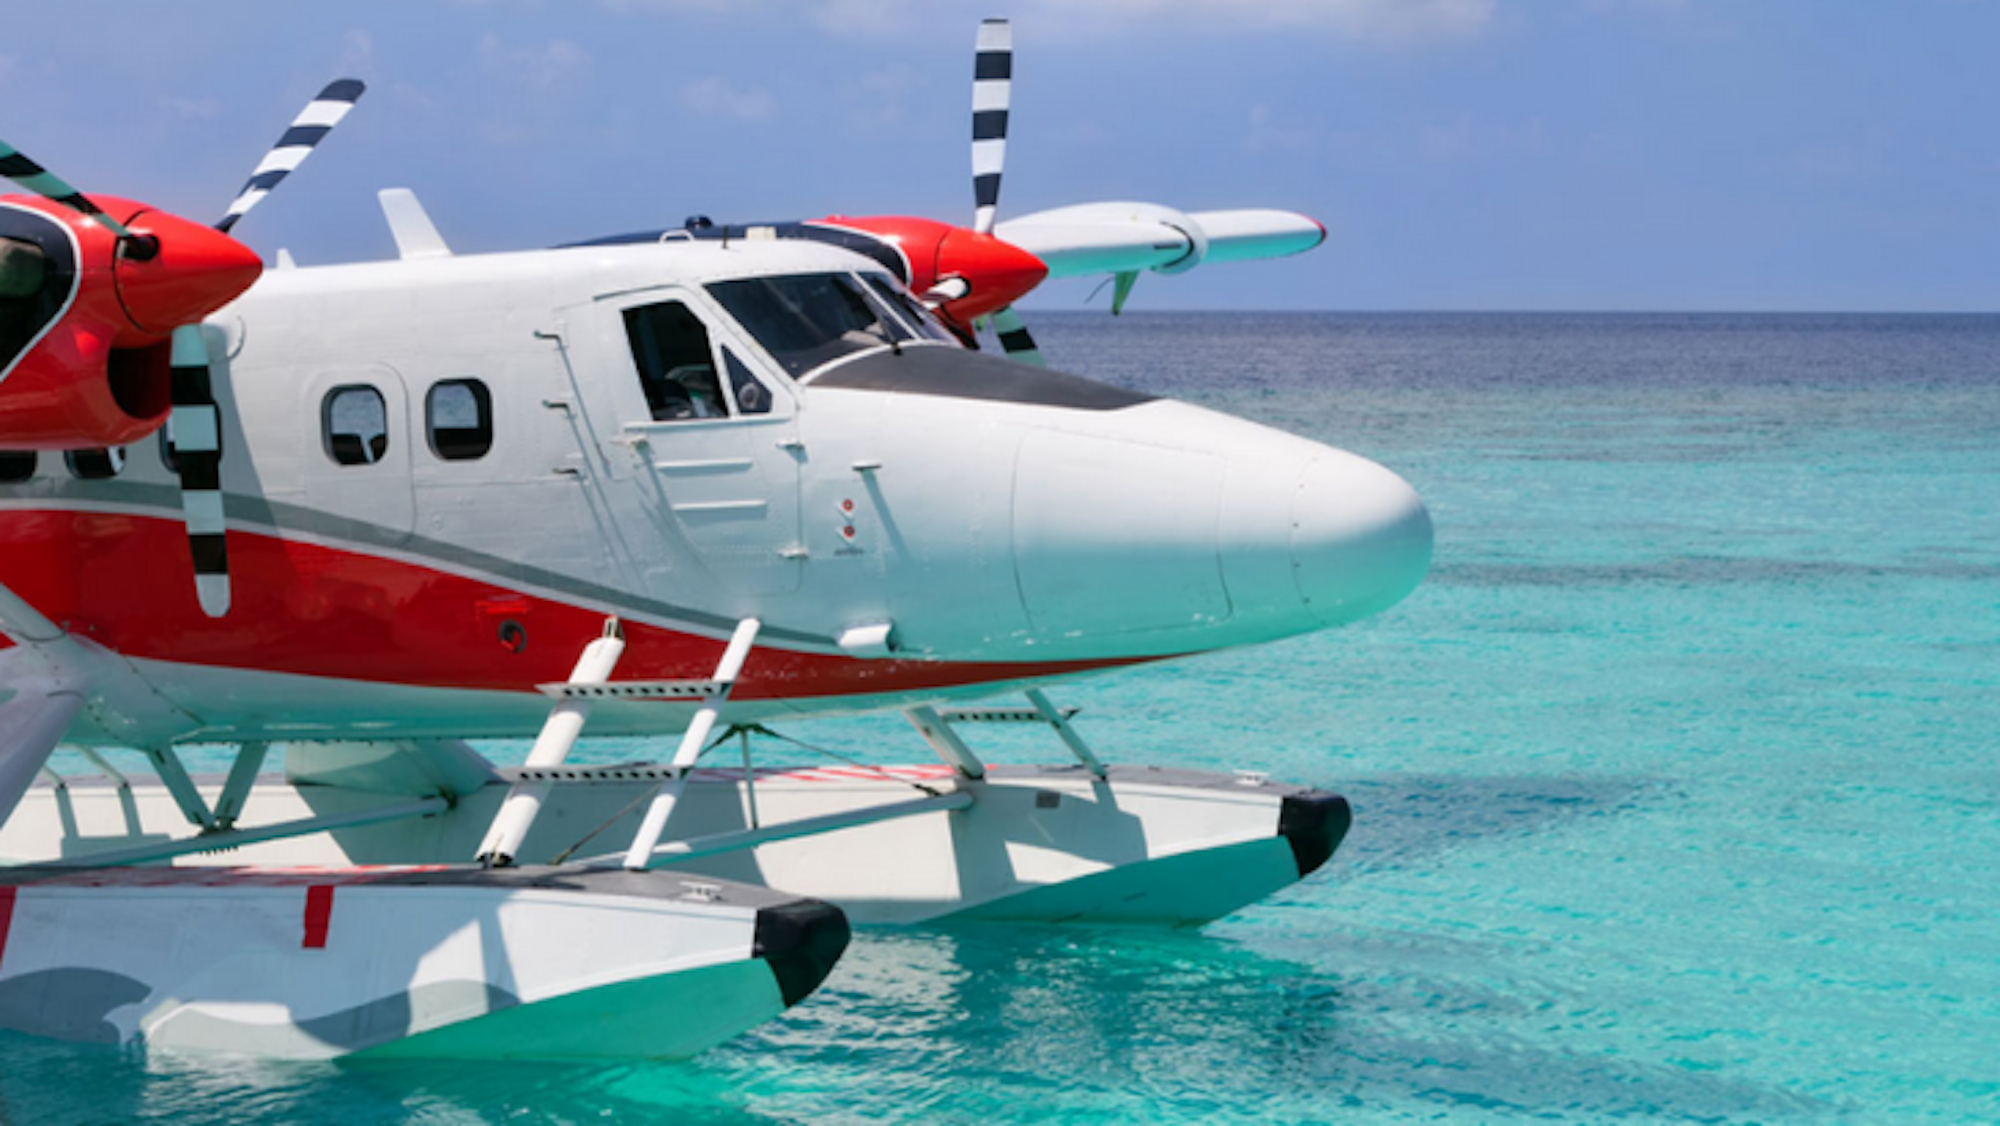 Das Unternehmen Isla Airline möchte demnächst Flüge mit Wasserflugzeugen zwischen Mallorca, Ibiza und Menorca anbieten.